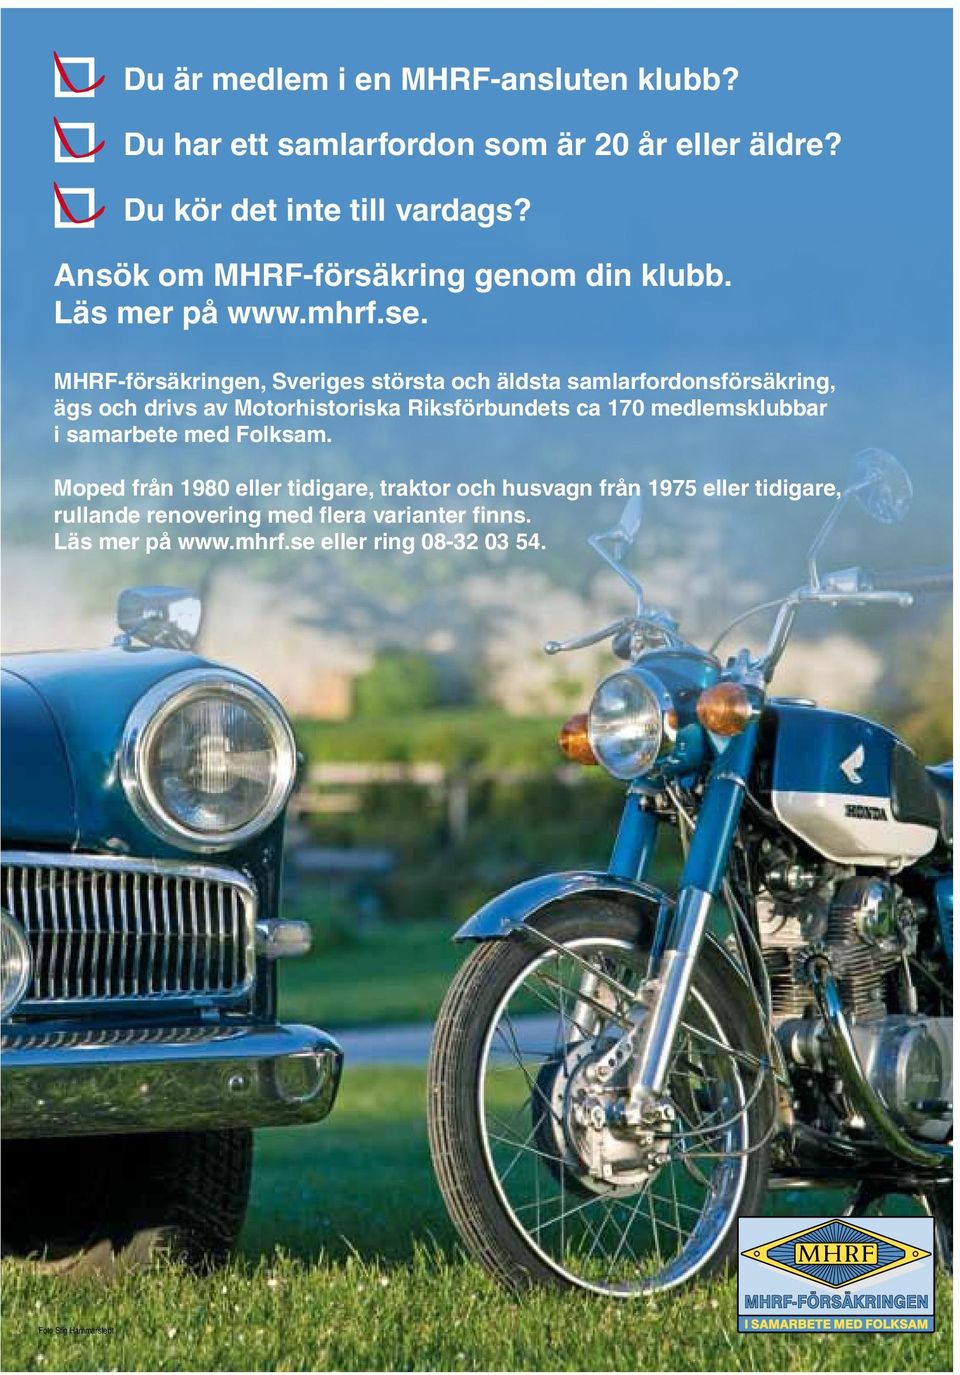 MHRF-försäkringen, Sveriges största och äldsta samlarfordonsförsäkring, ägs och drivs av Motorhistoriska Riksförbundets ca 170